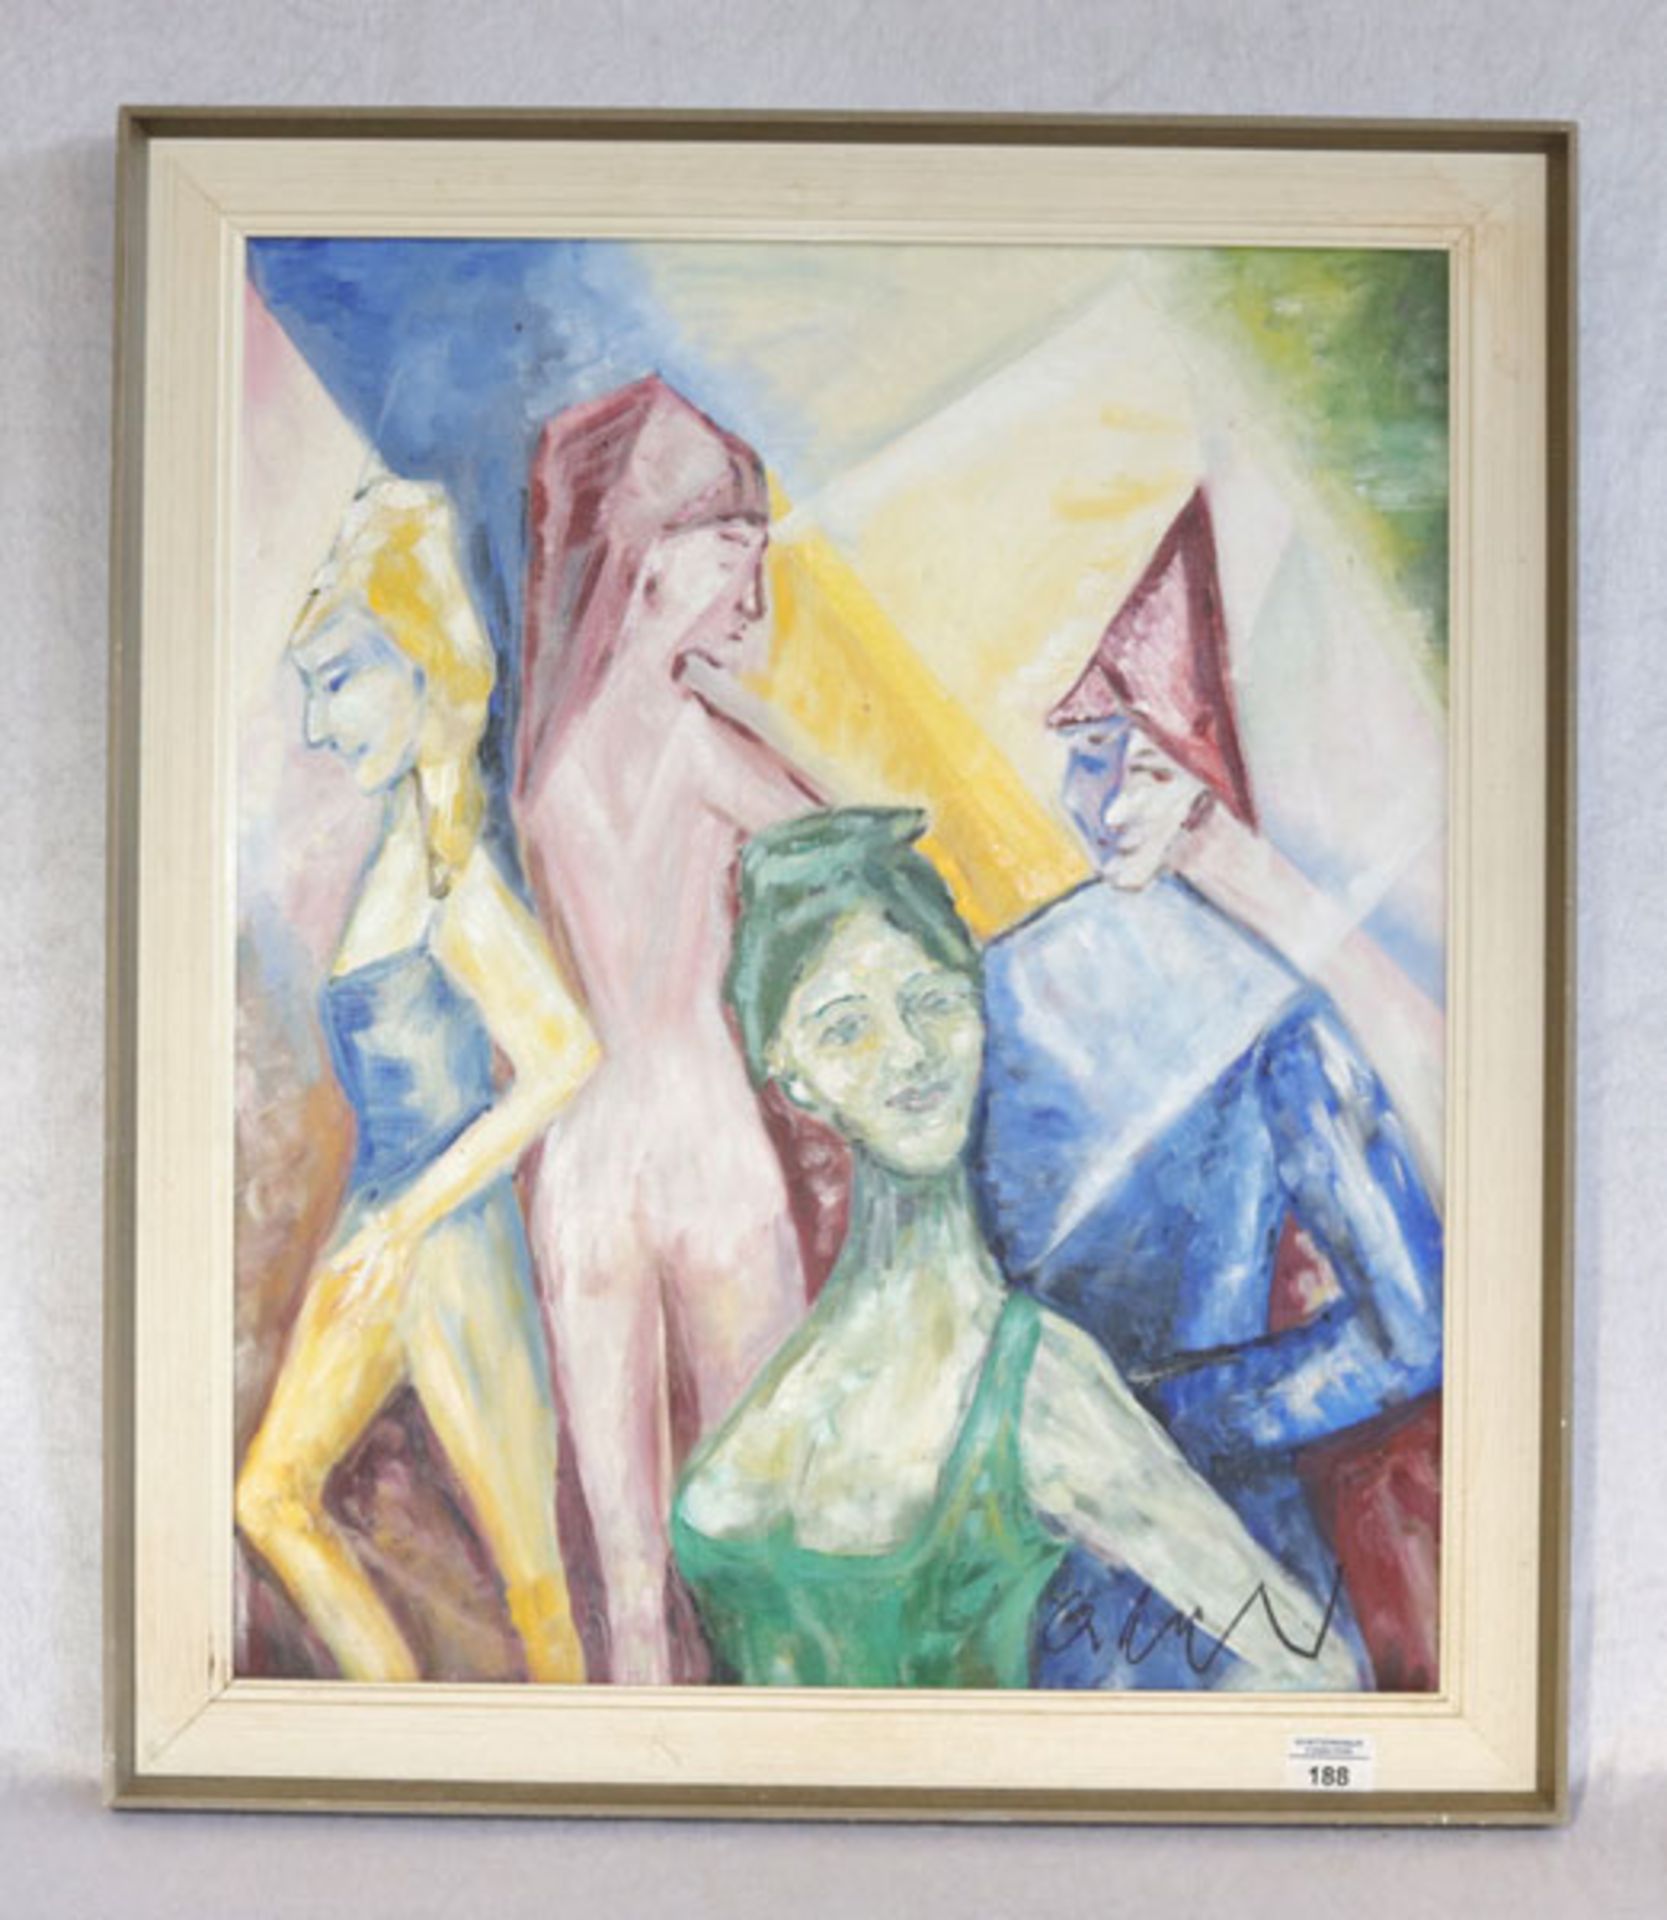 Gemälde ÖL/LW 'Zirkus', undeutlich signiert, Rahmen leicht bestossen, incl. Rahmen 72 cm x 61,5 cm